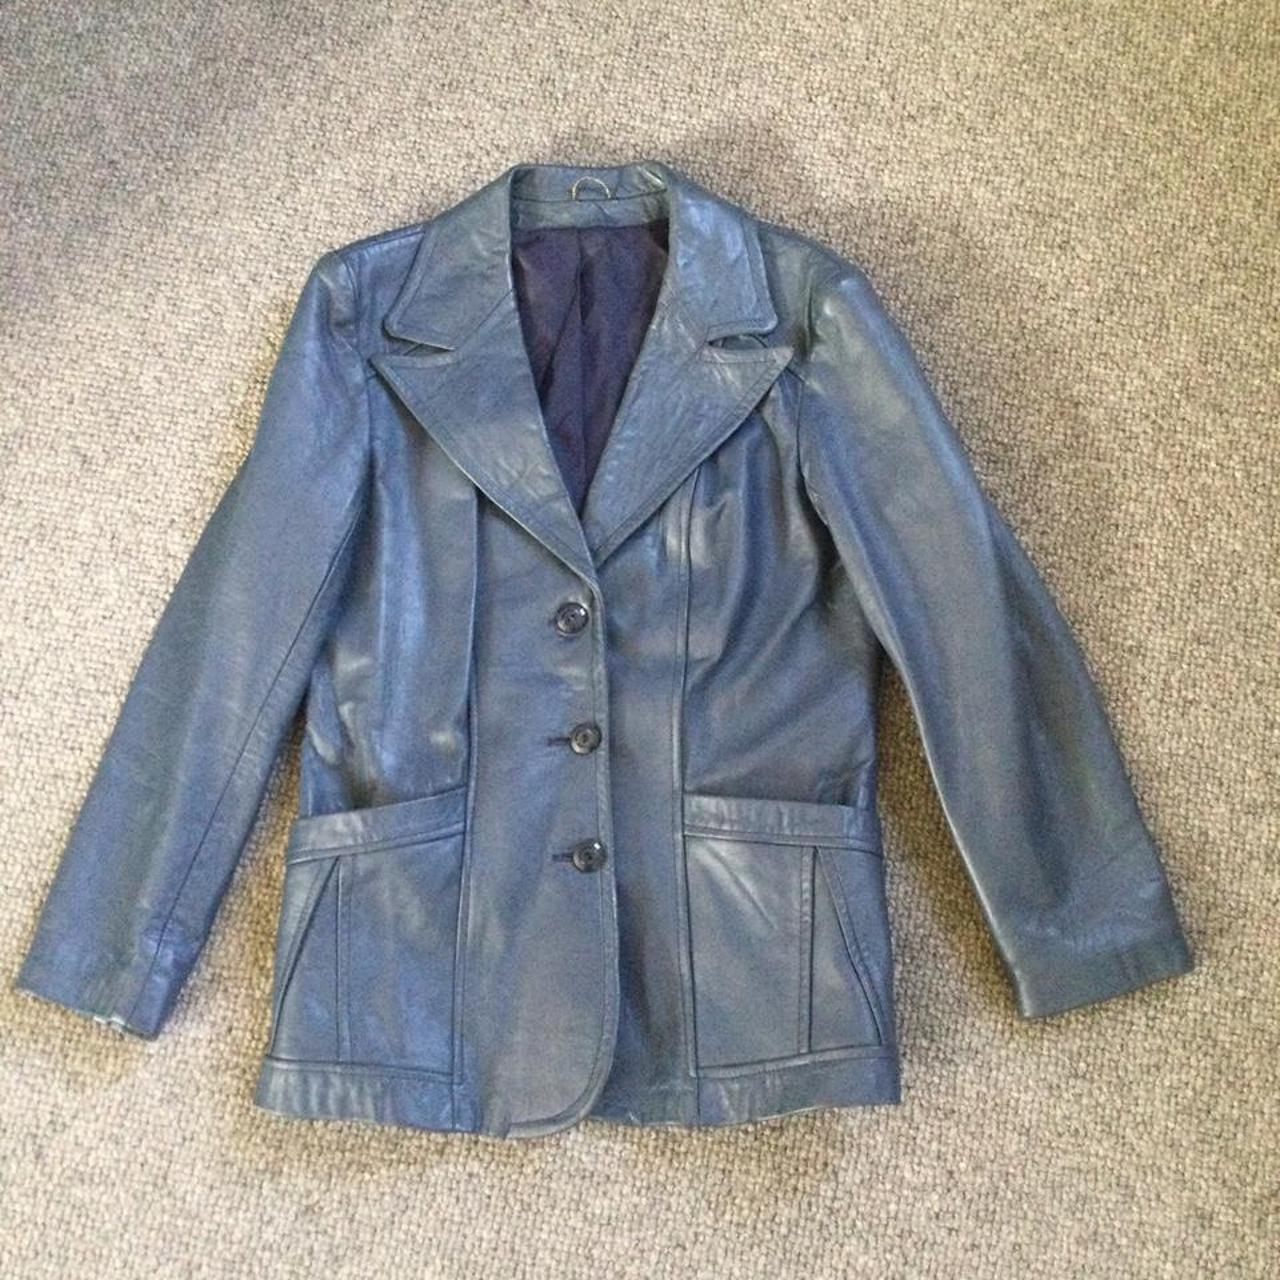 A ladies vintage 1970s leather jacket in an Air... - Depop